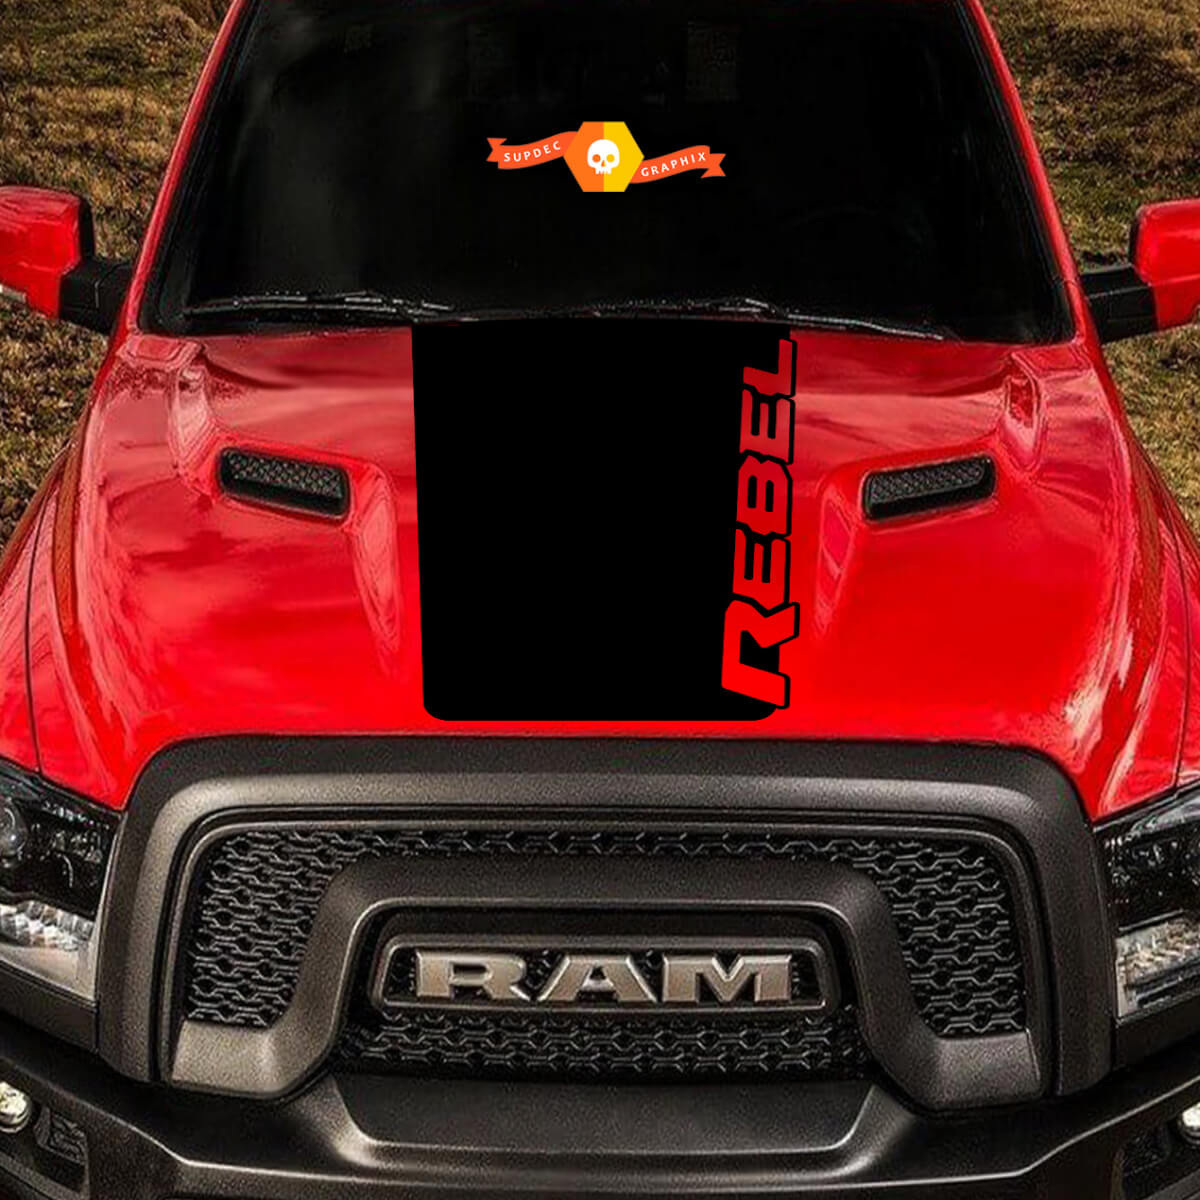 2015-2017 Dodge Ram Rebel Logo Hood Truck Vinyl Decal Graphic